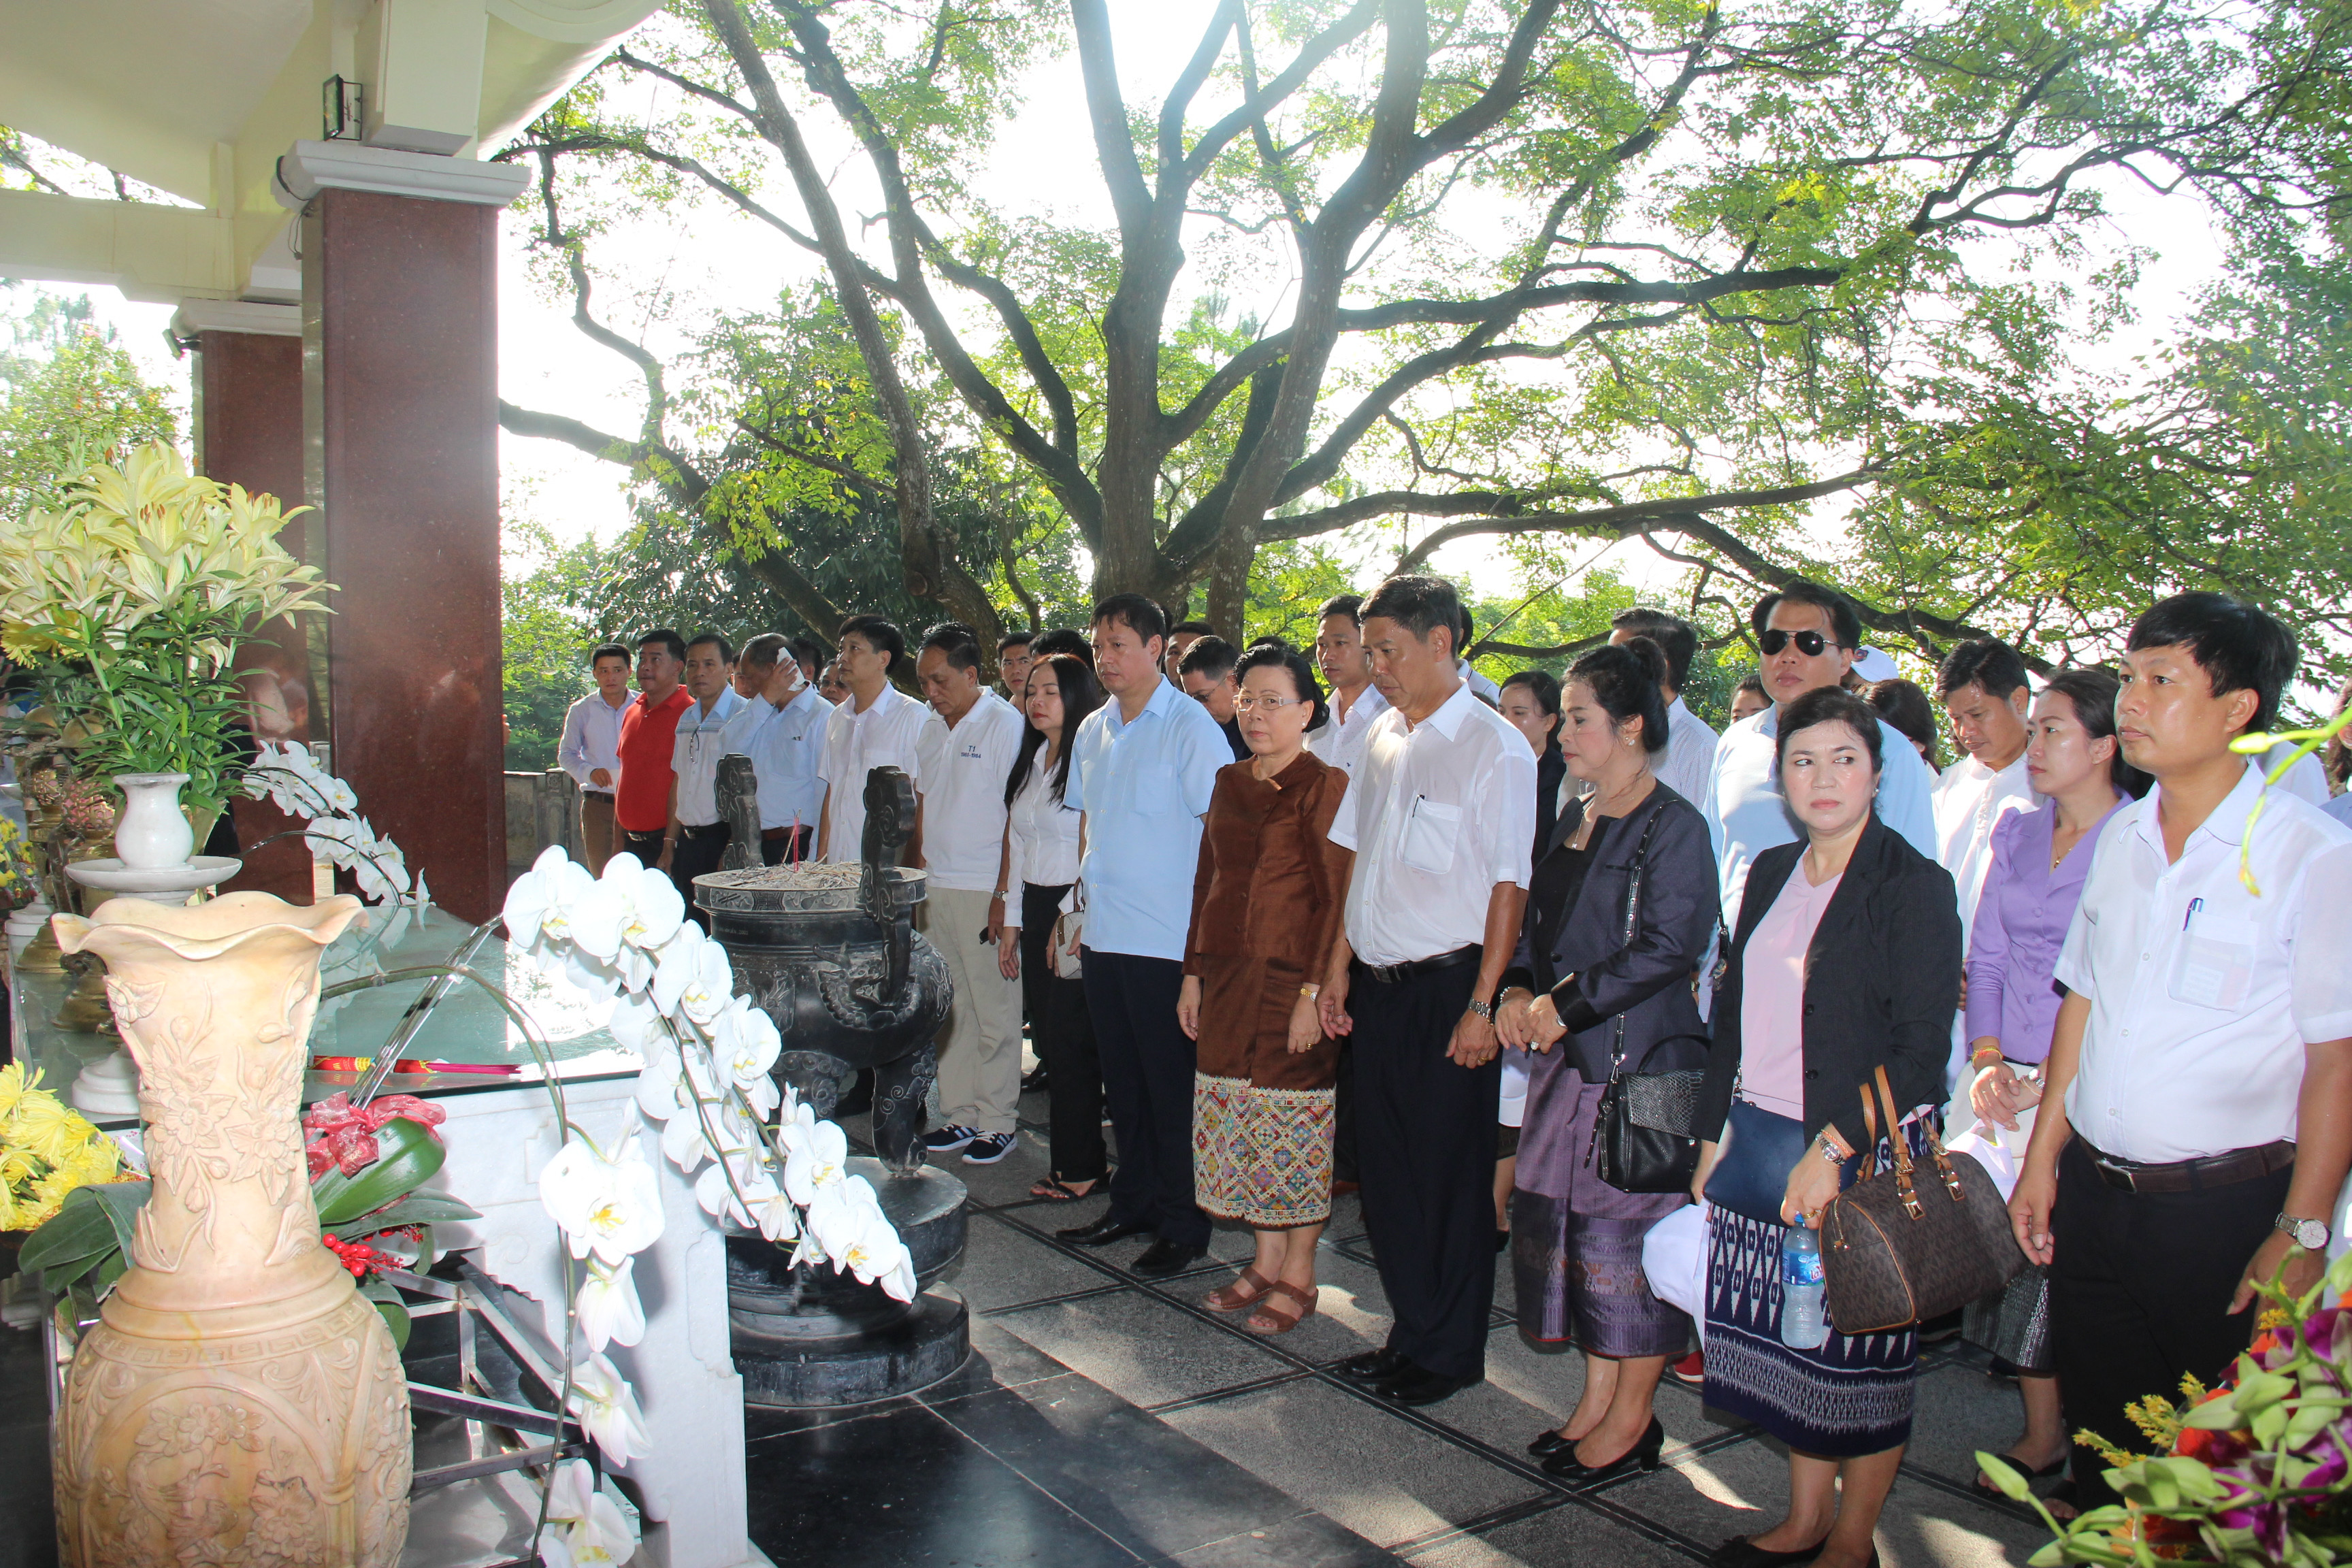 Đoàn đại biểu dâng hương, dâng hoa trước phần mộ bà Hoàng Thị Loan thân mẫu Bác Hồ trên núi Động Tranh, xã Nam Giang huyện Nam Đàn, Nghệ An.